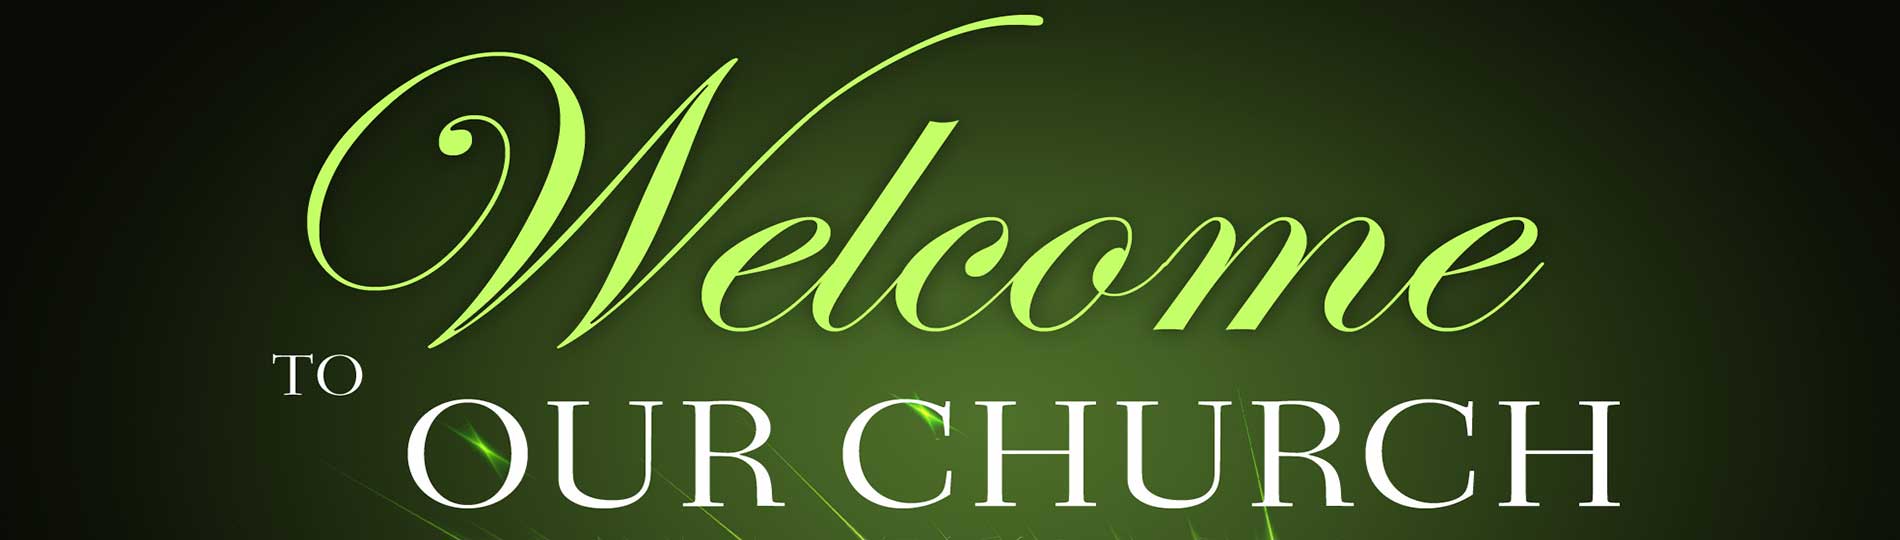 Bible Fellowship Apostolic Church Montgomery, Alabama | Pastor Roderick ...